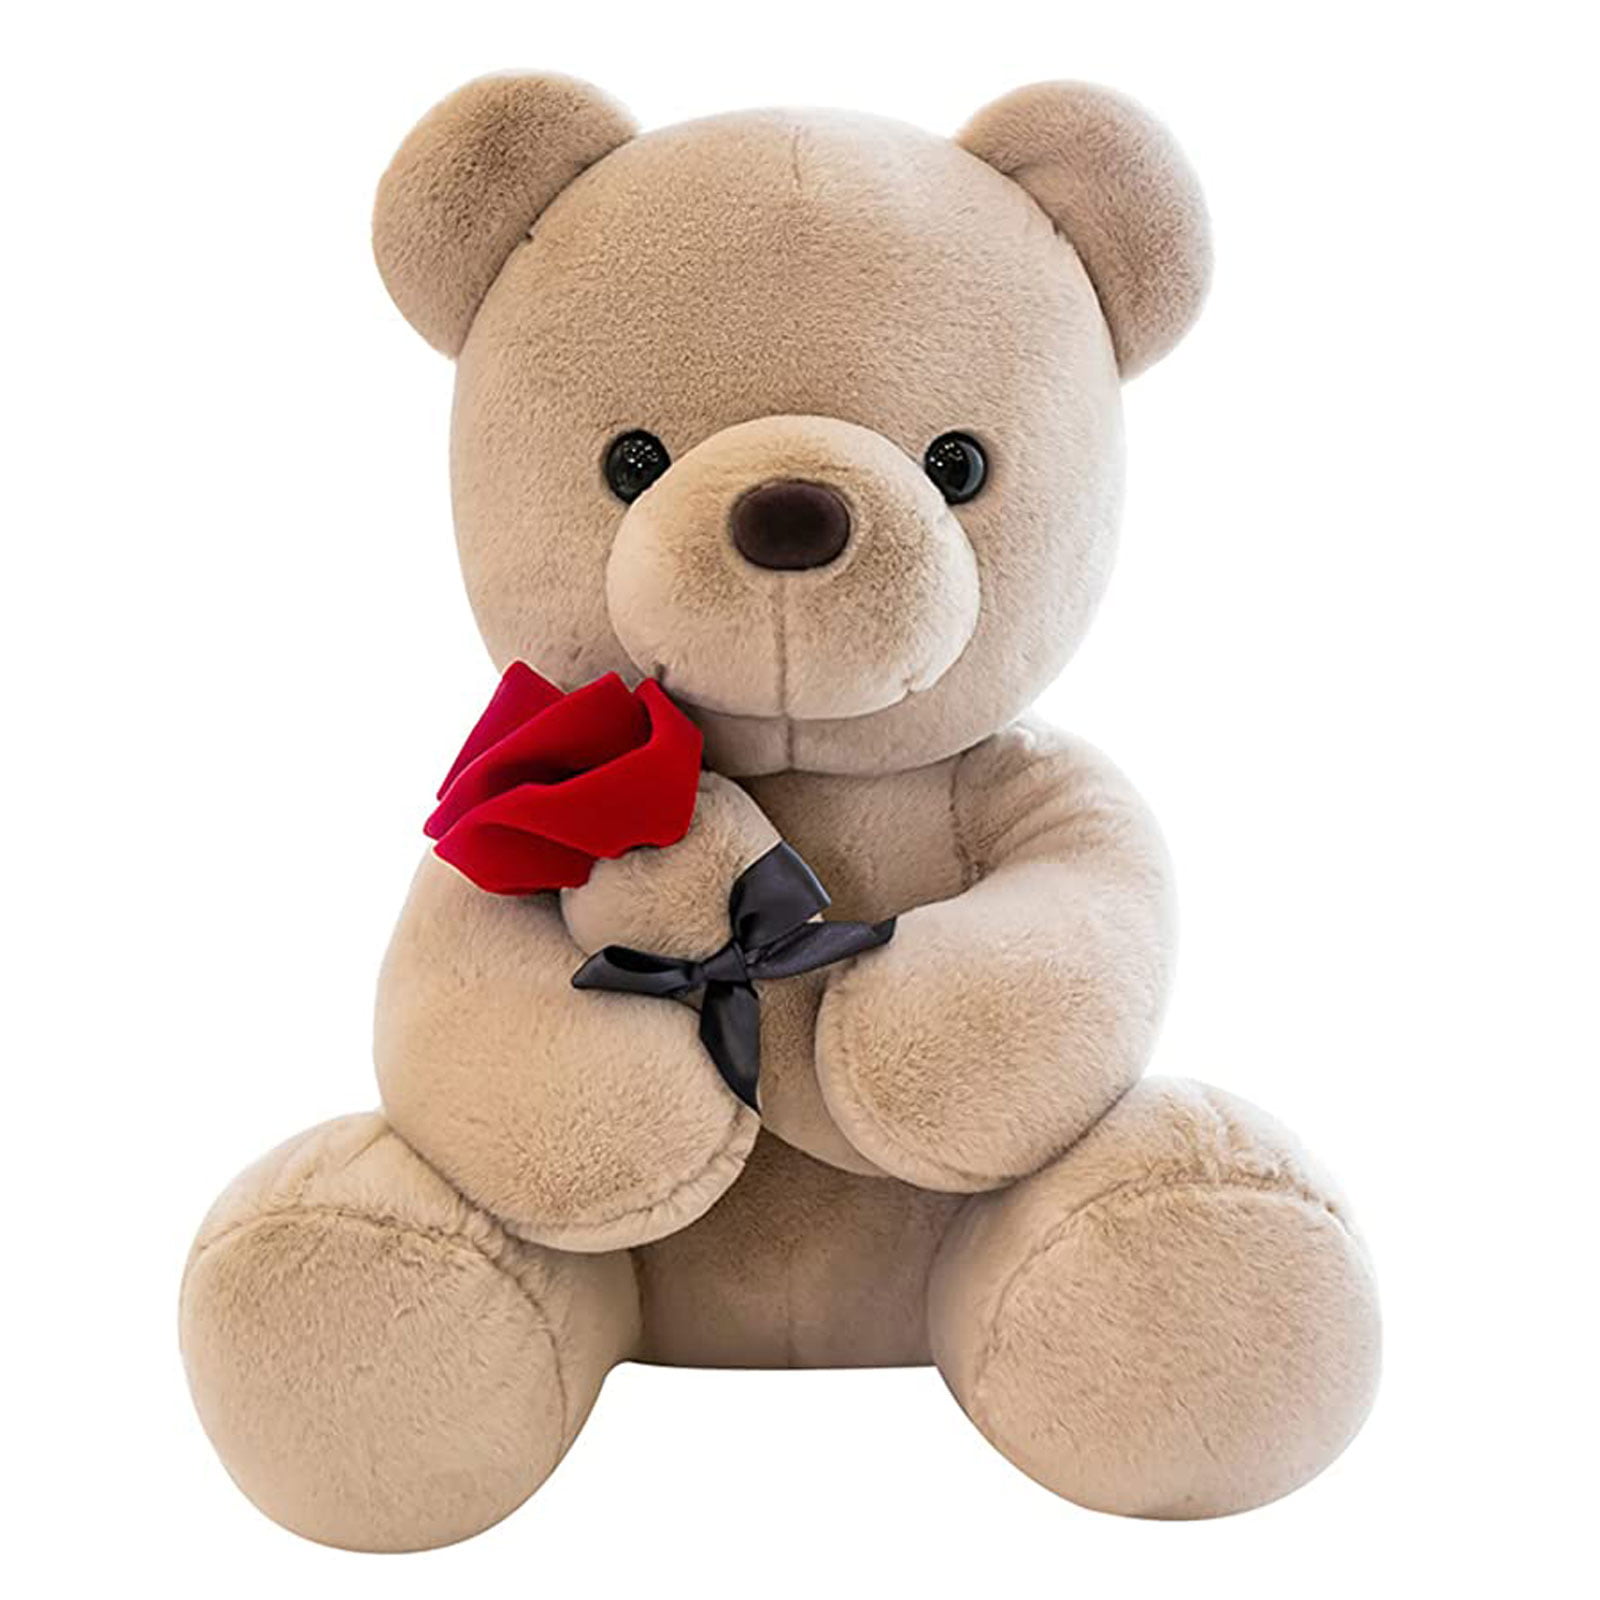 I LOVE GEORGE Gift Present Birthday Valentine NEW Teddy Bear Cute Cuddly 